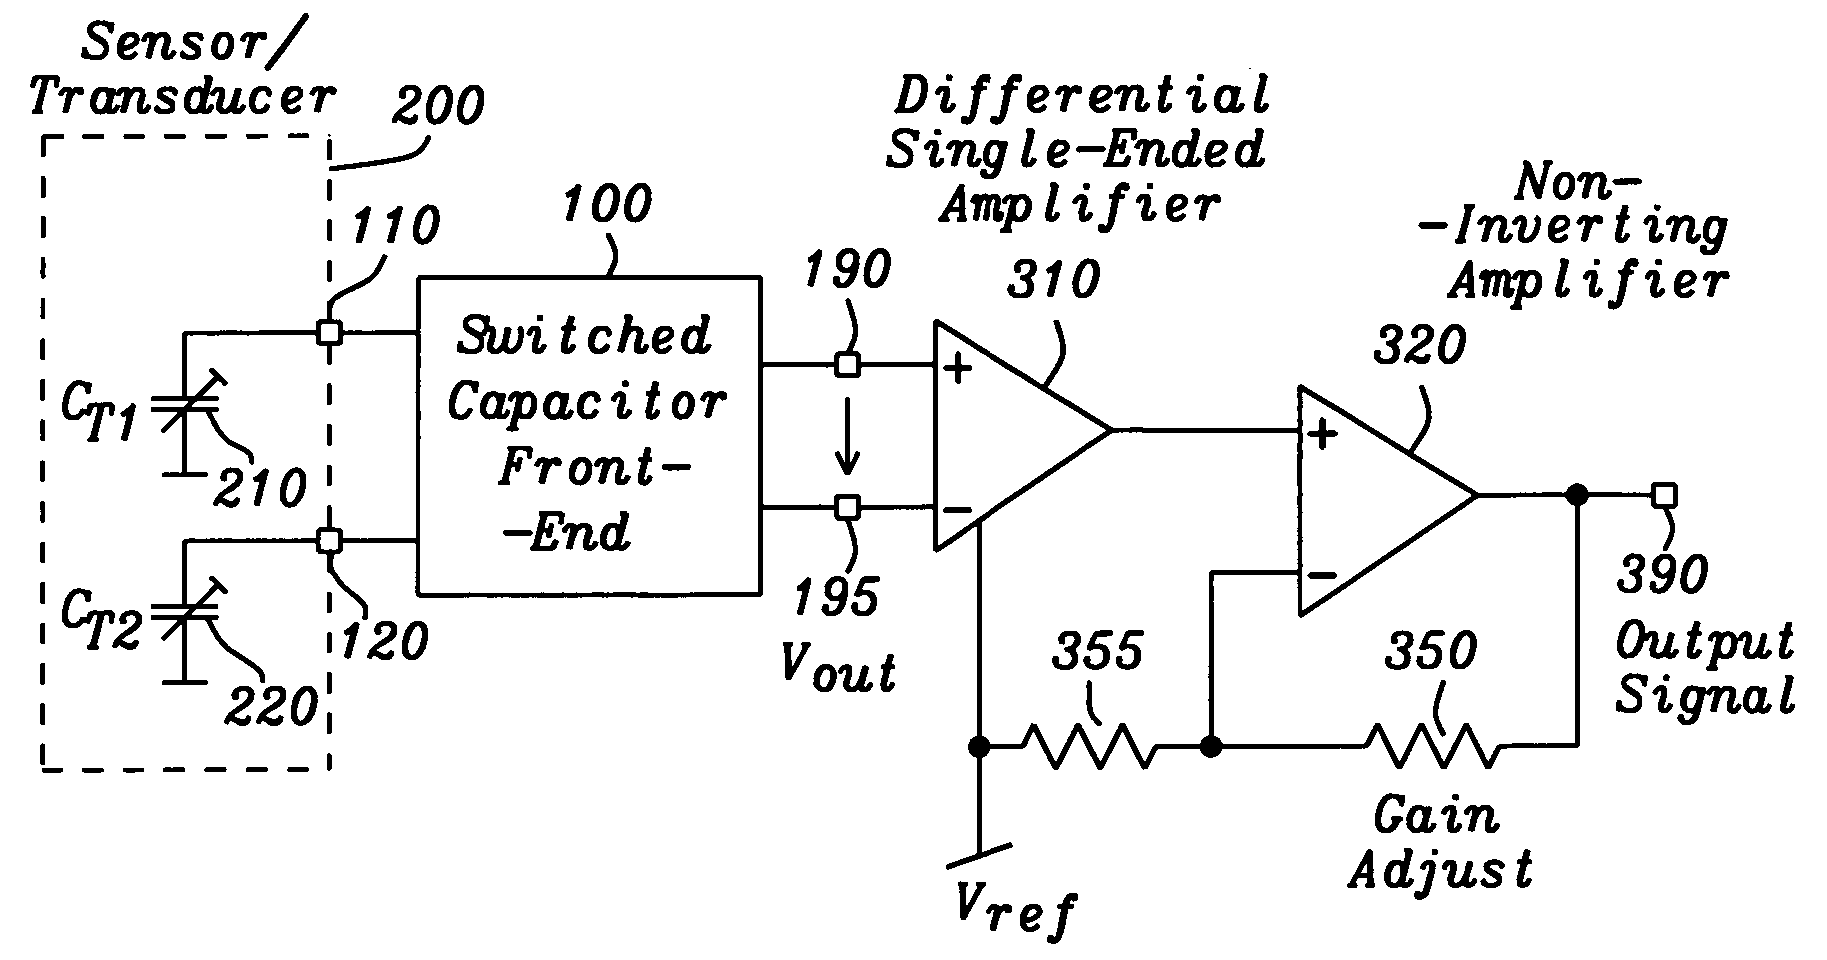 Differential capacitance measurement